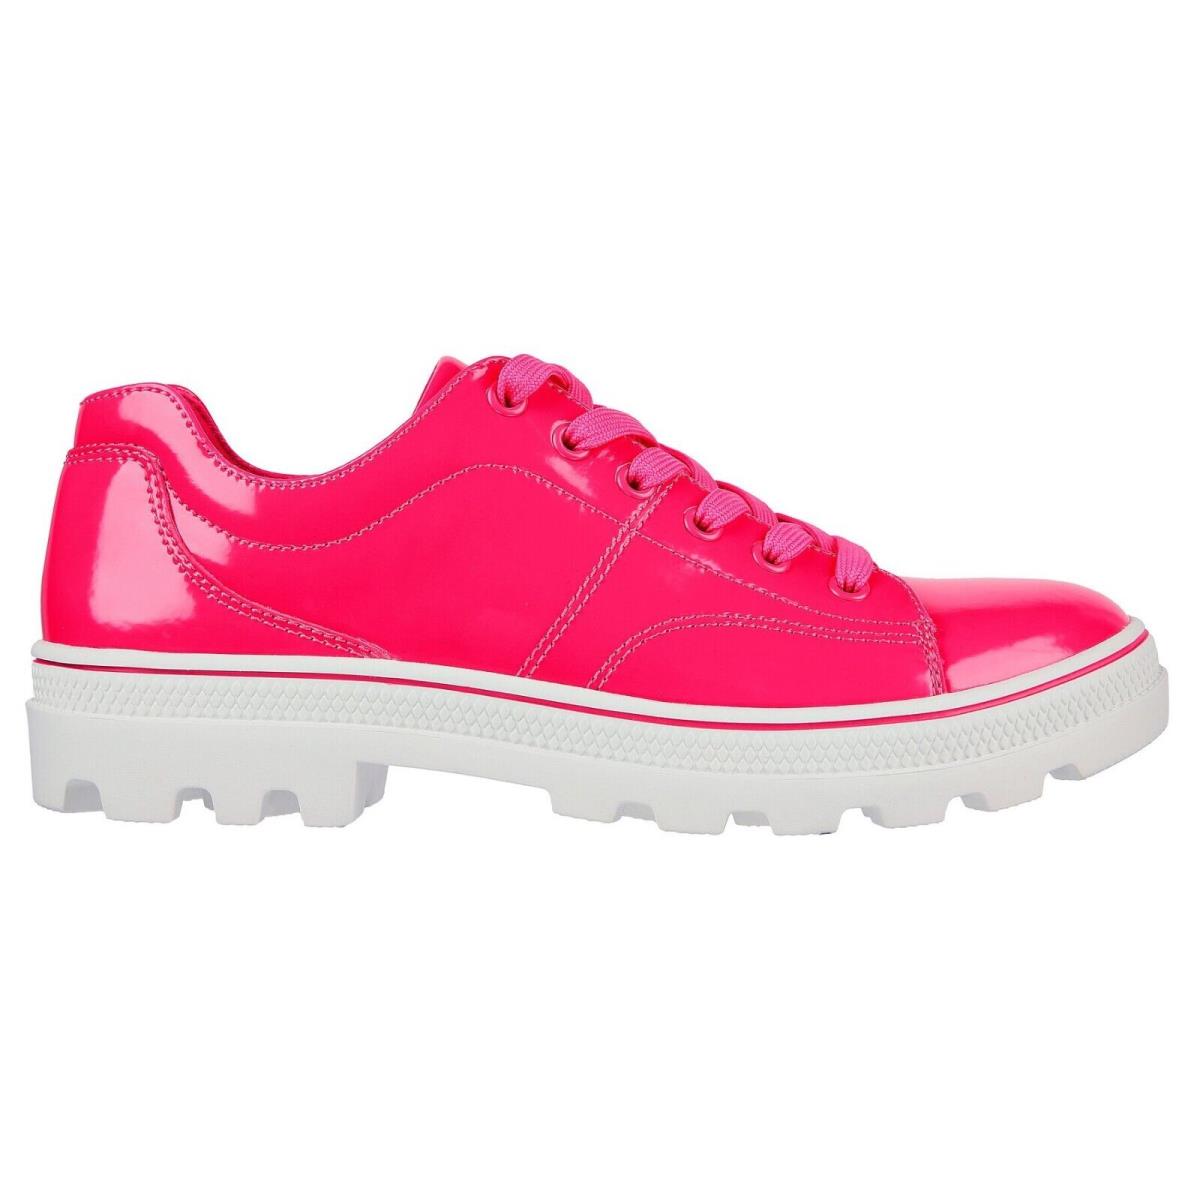 Skechers shoes Roadies - Hot Pink 4